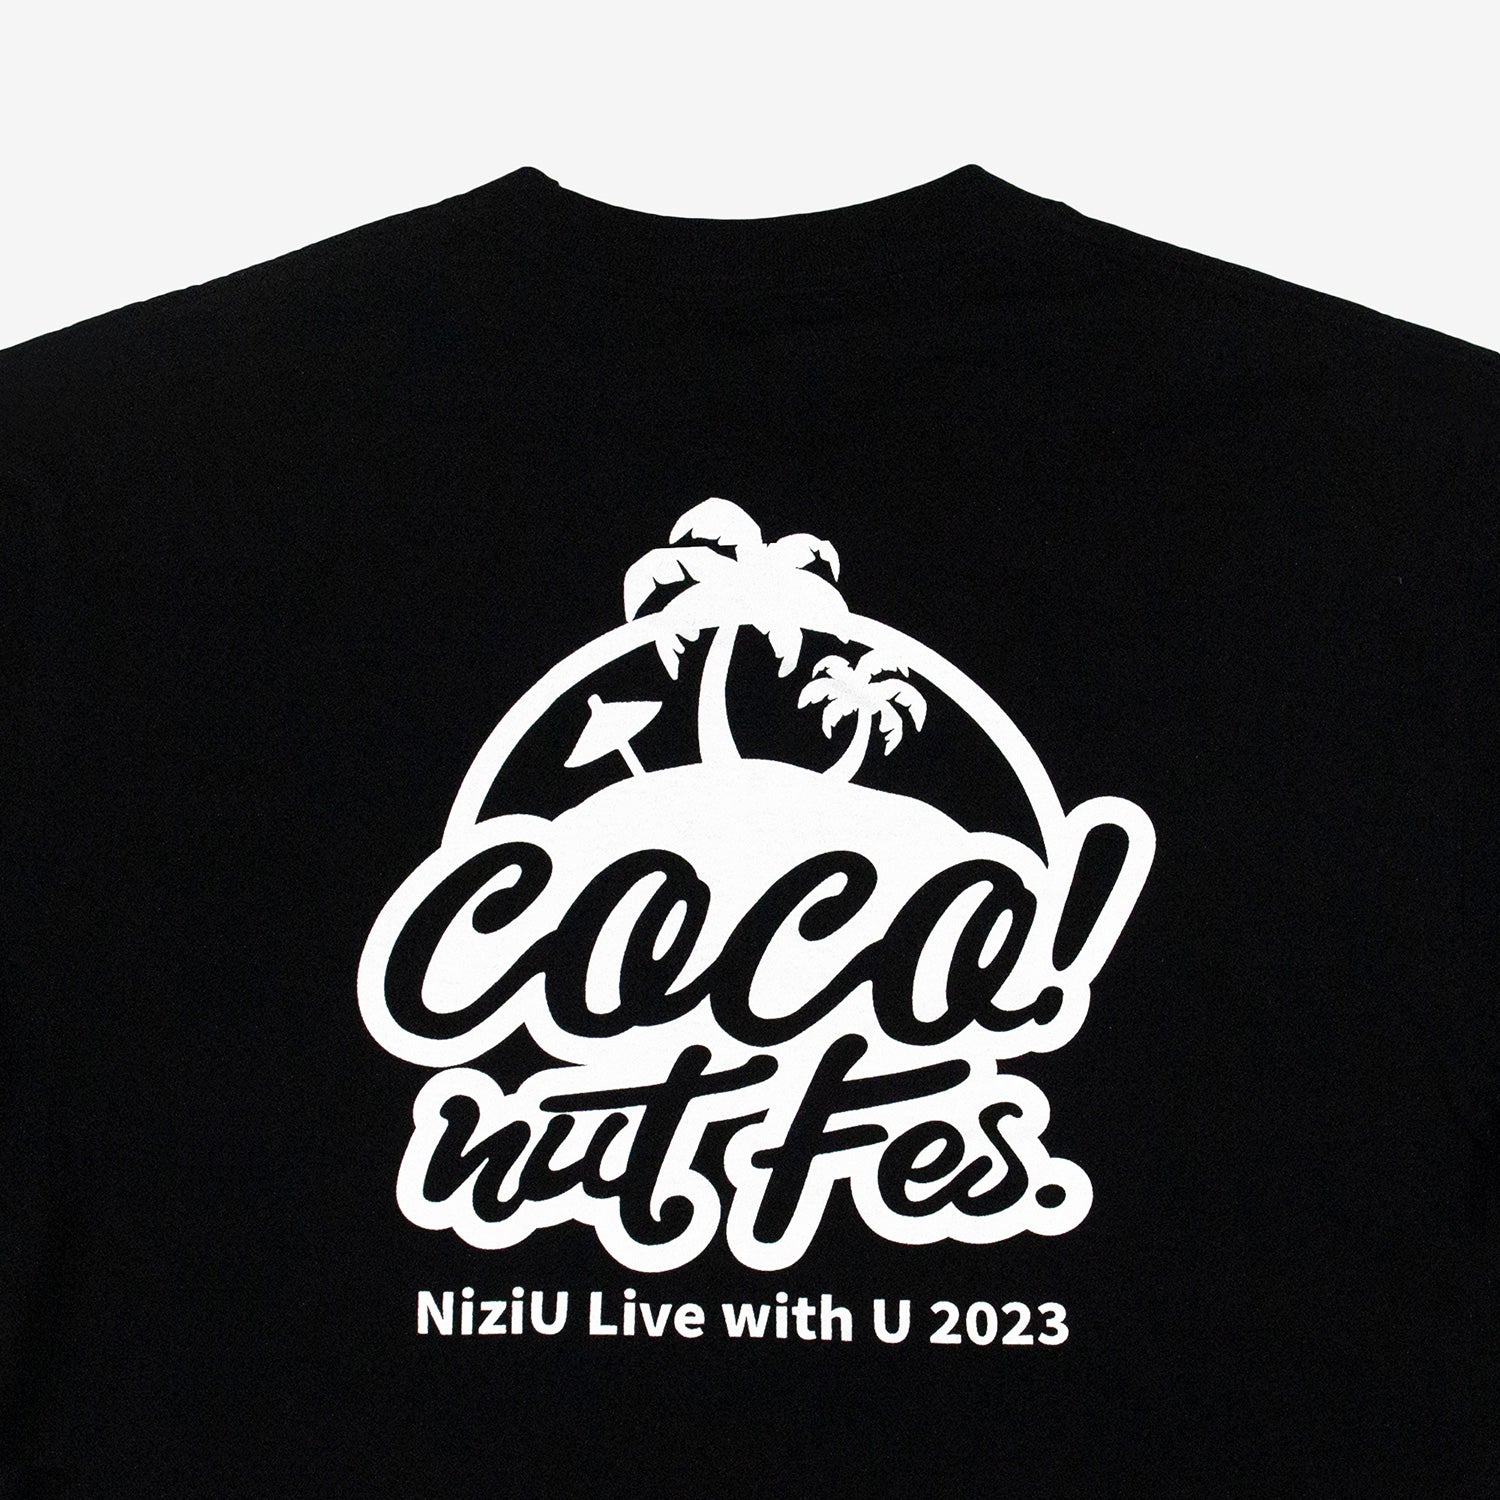 T-SHIRT / BLACK【S】 / NiziU『COCO! nut Fes.』